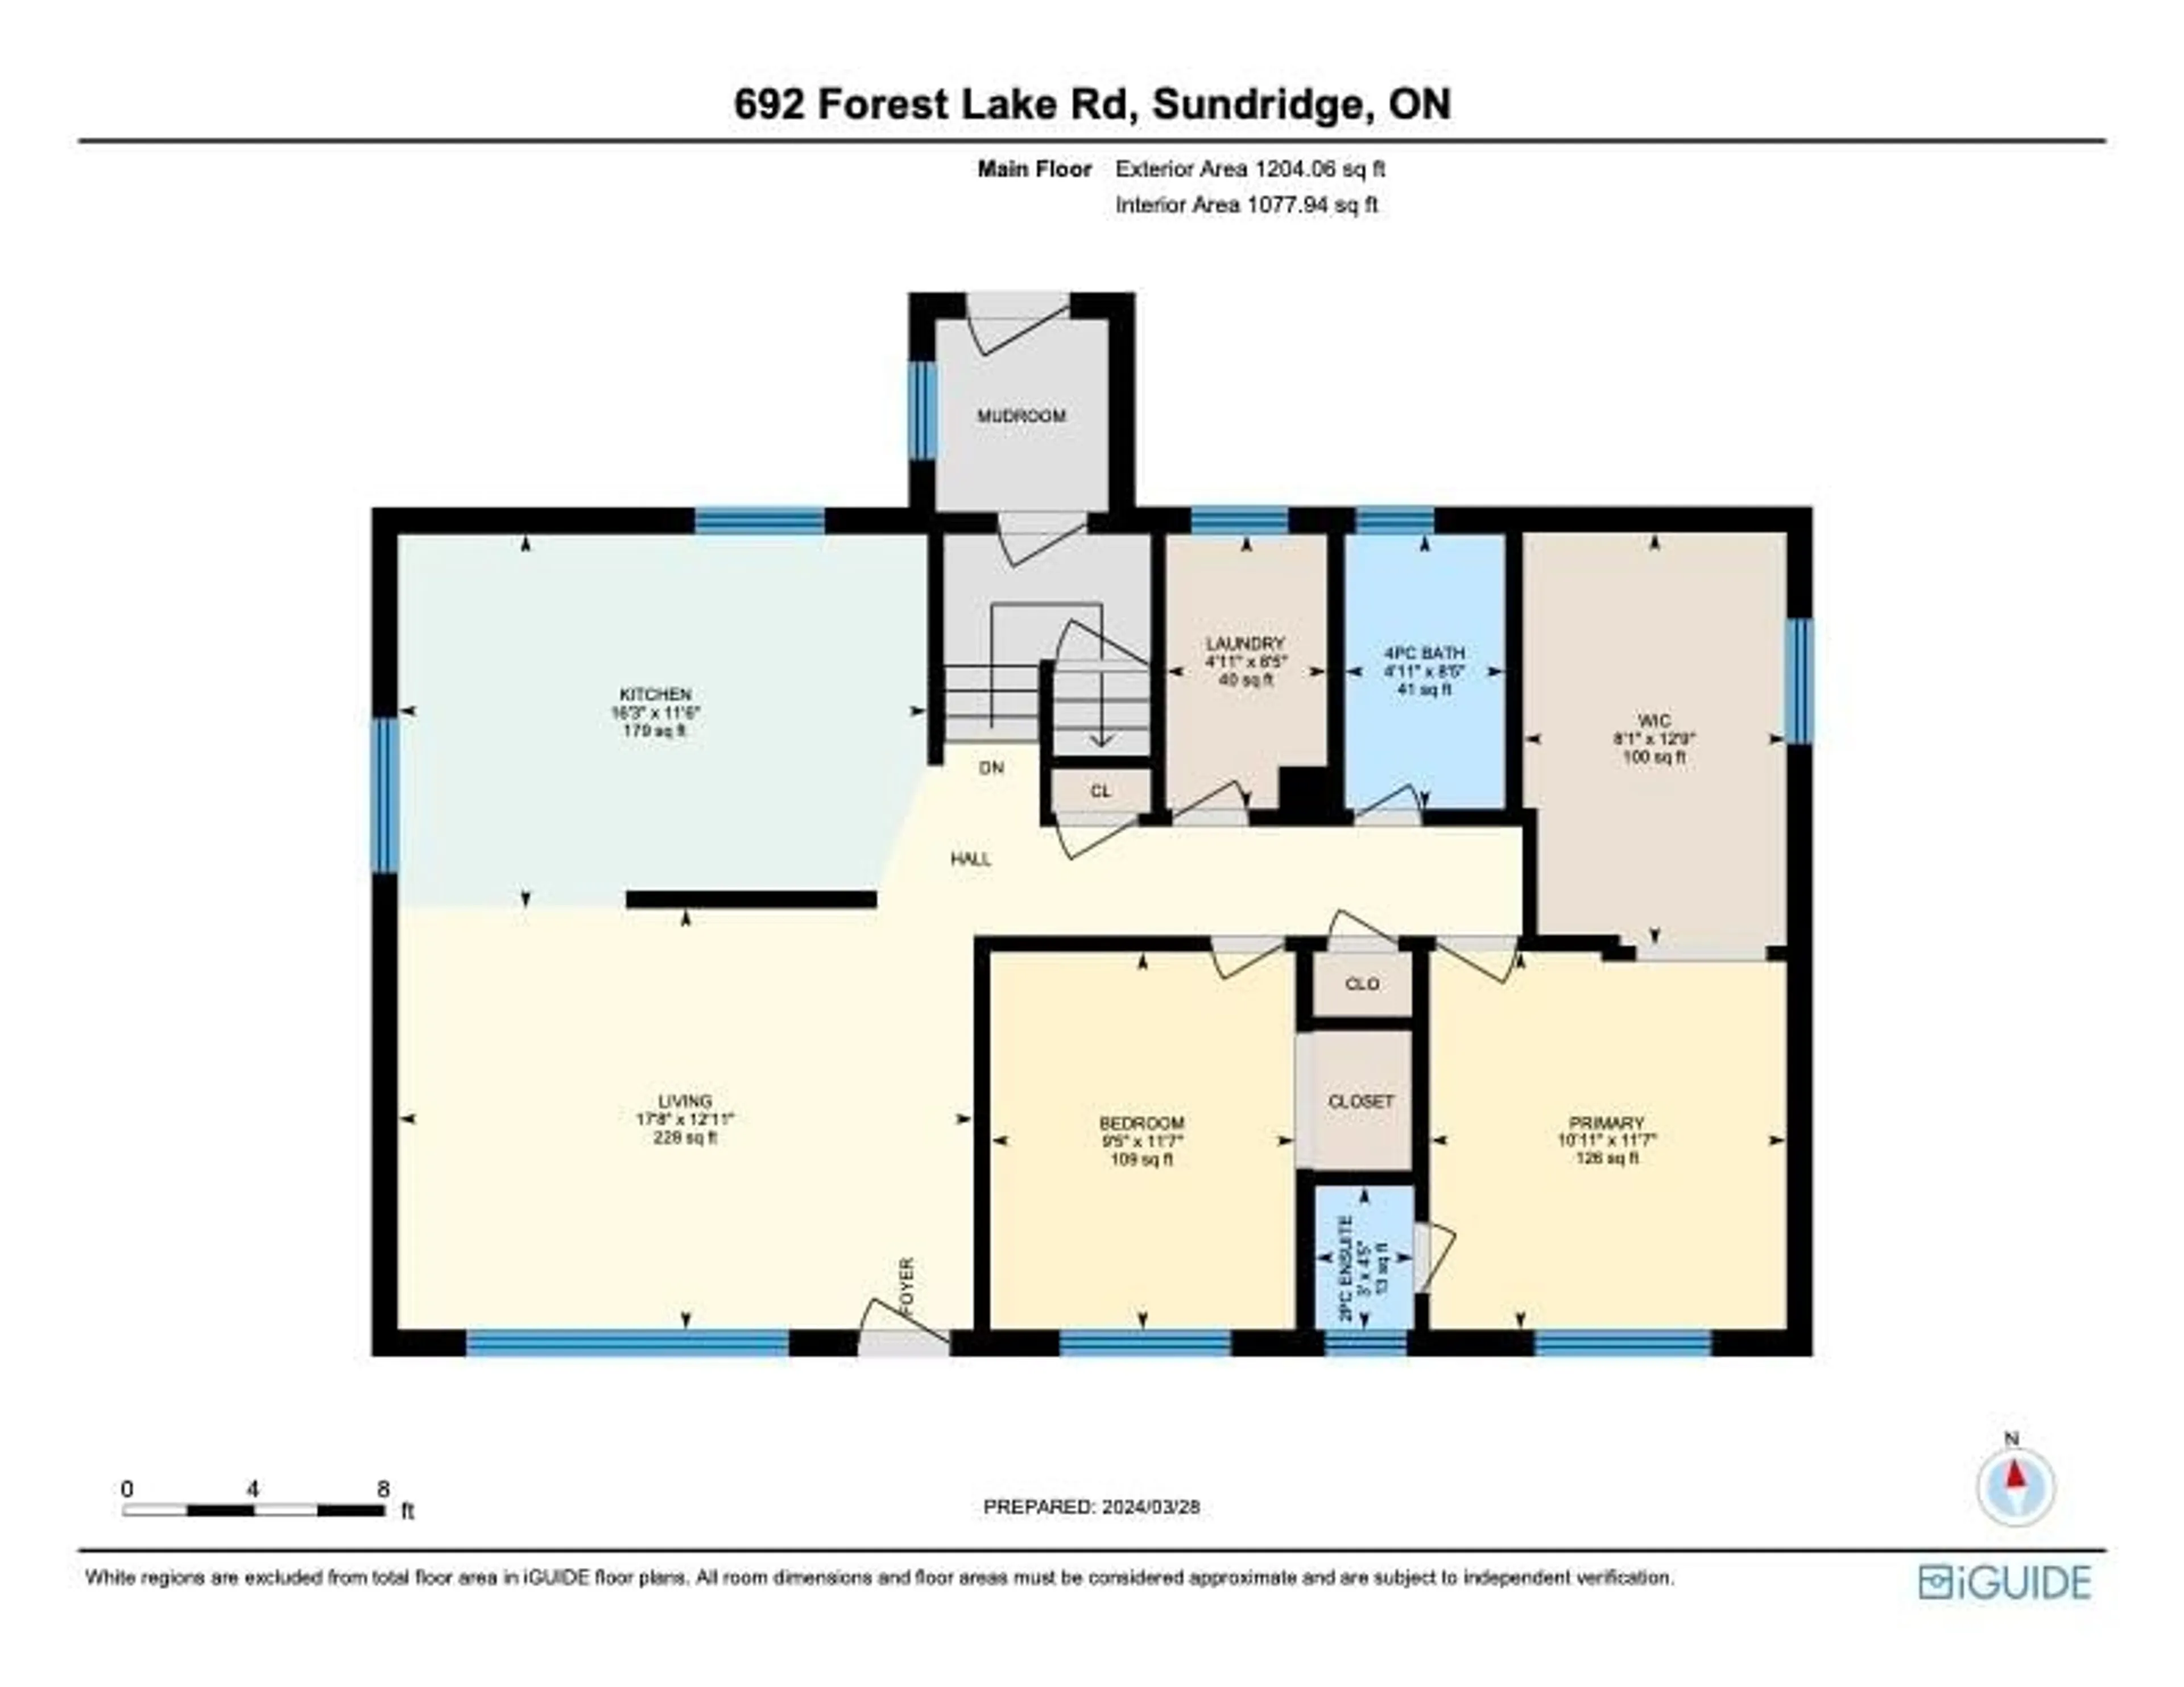 Floor plan for 692 Forest Lake Rd, Sundridge Ontario P0A 1Z0